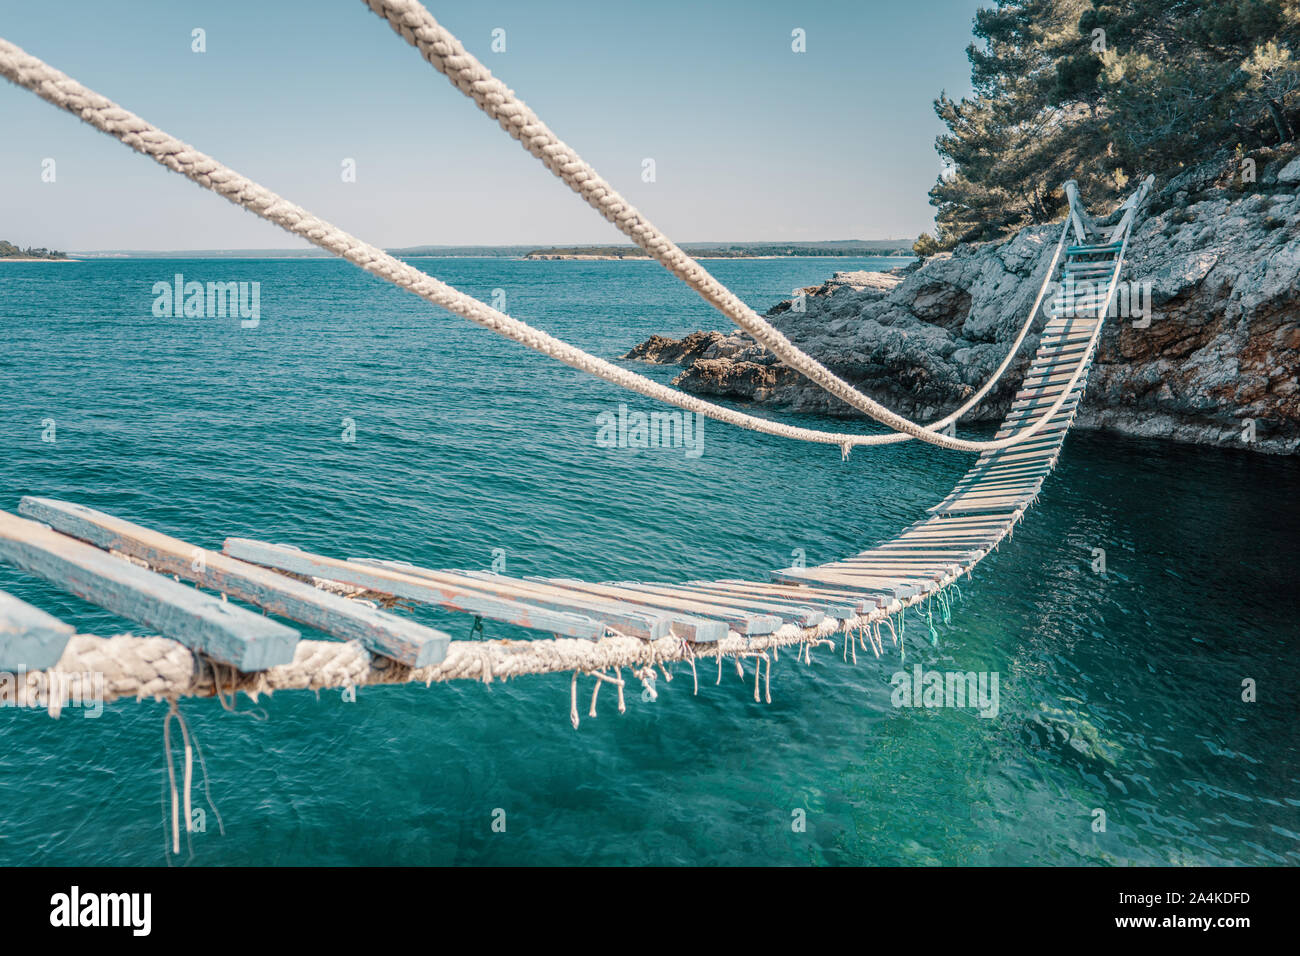 Seilbrücke über eine Klippe in Punta Christo, Pula, Kroatien - Europa. Reisen Fotografie, perfekt für Zeitschriften und Reiseziel Artikel. Stockfoto